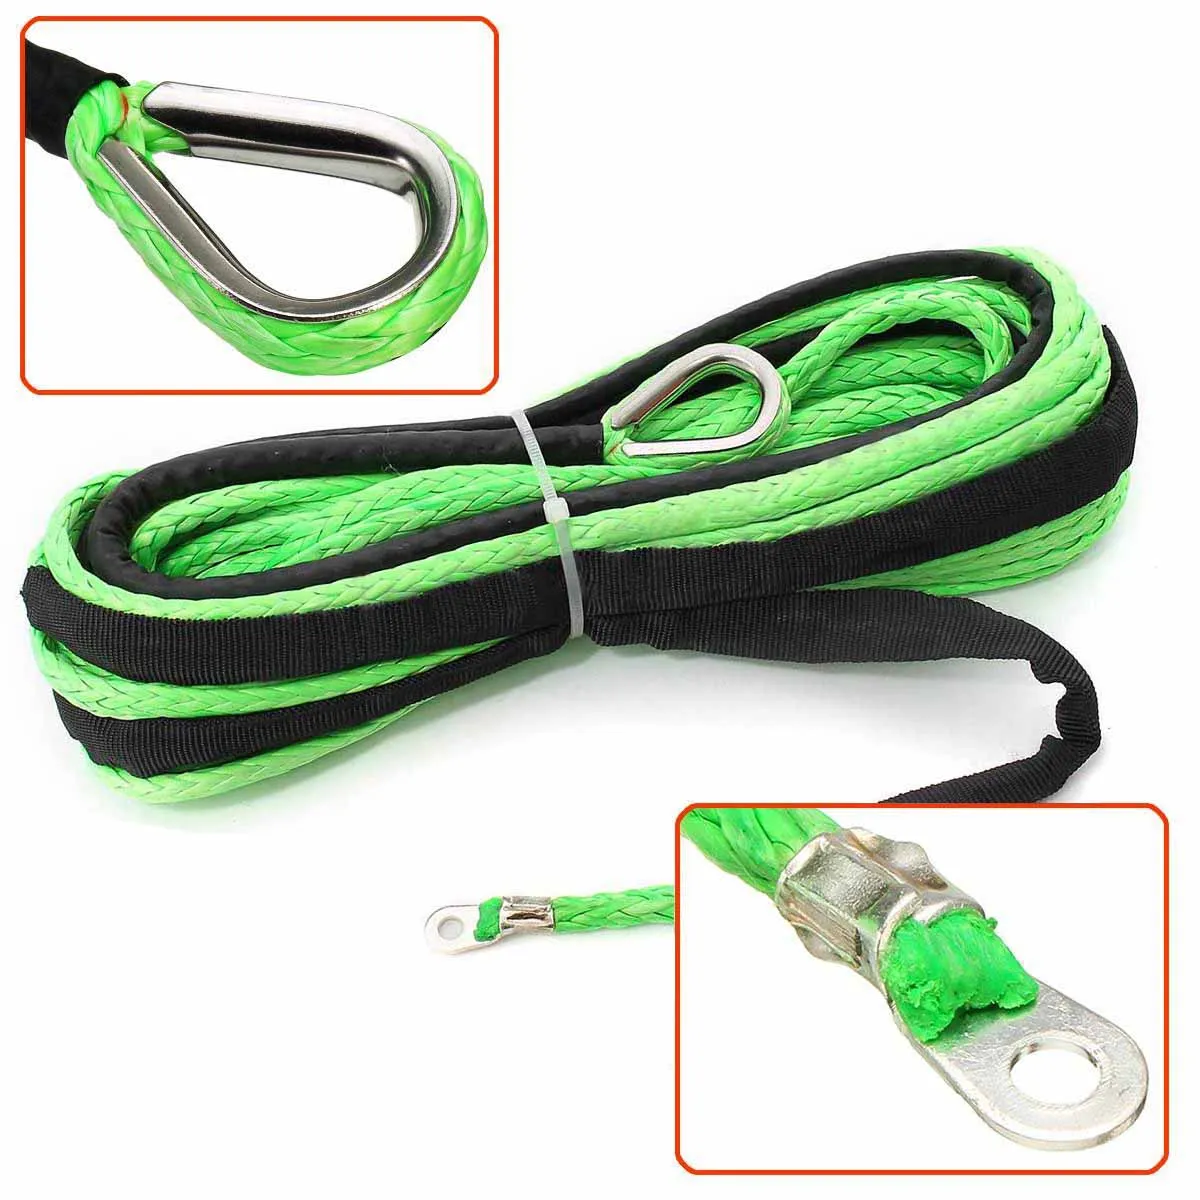 1 шт. зеленый синтетический трос лебедки 4,8 мм * 15 м 5500lbs кабель леска с крюком для ATV UTV Off-Road